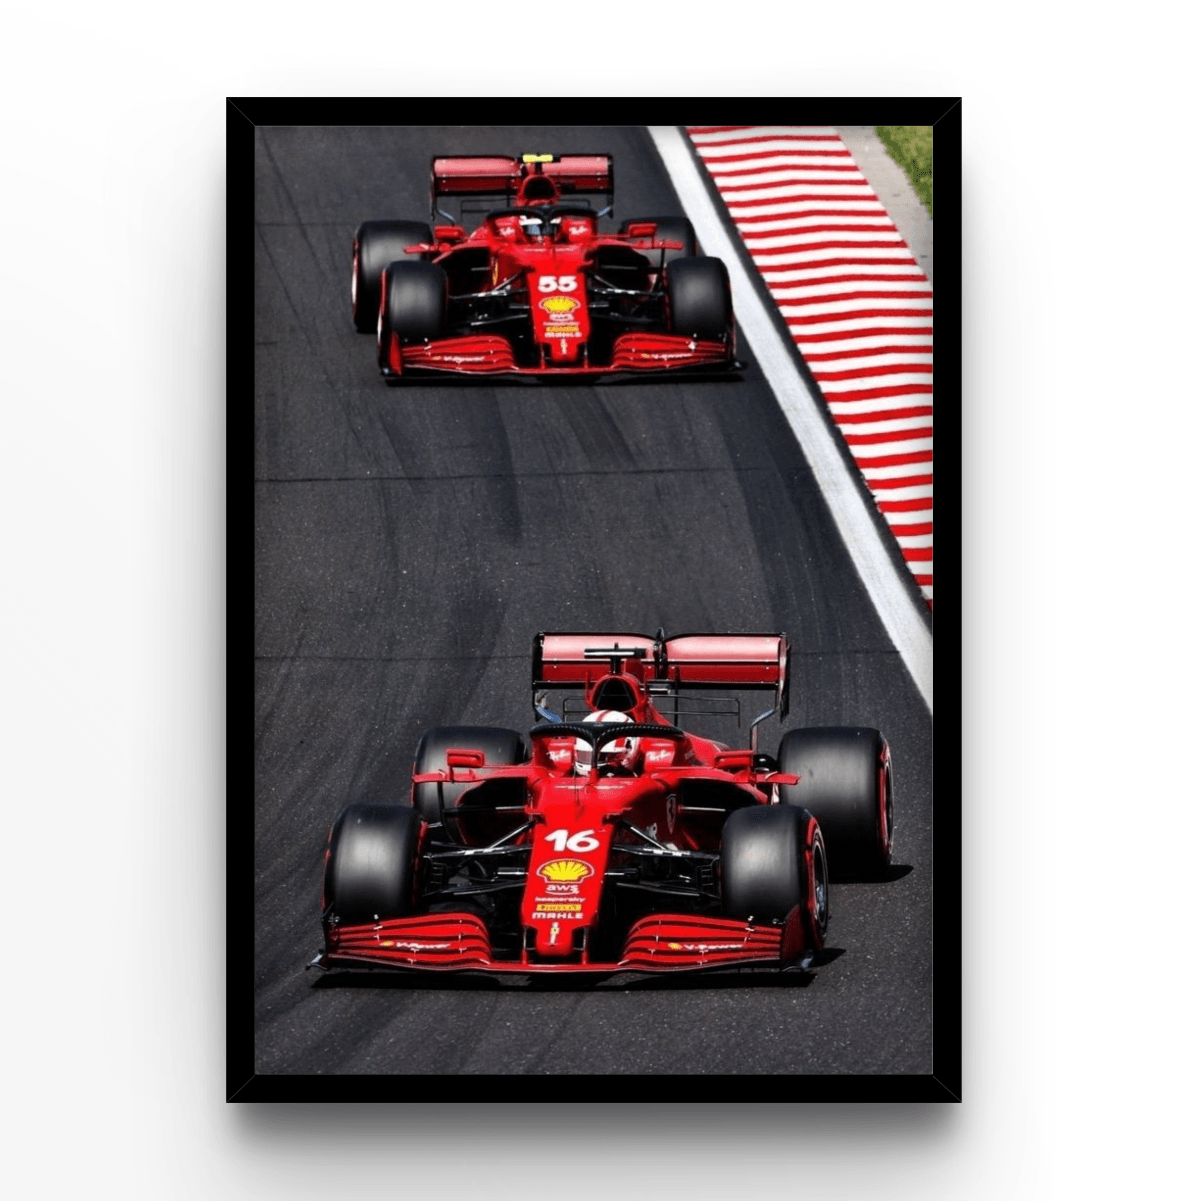 Ferrari Drivers - A4, A3, A2 Posters Base - Poster Print Shop / Art Prints / PostersBase